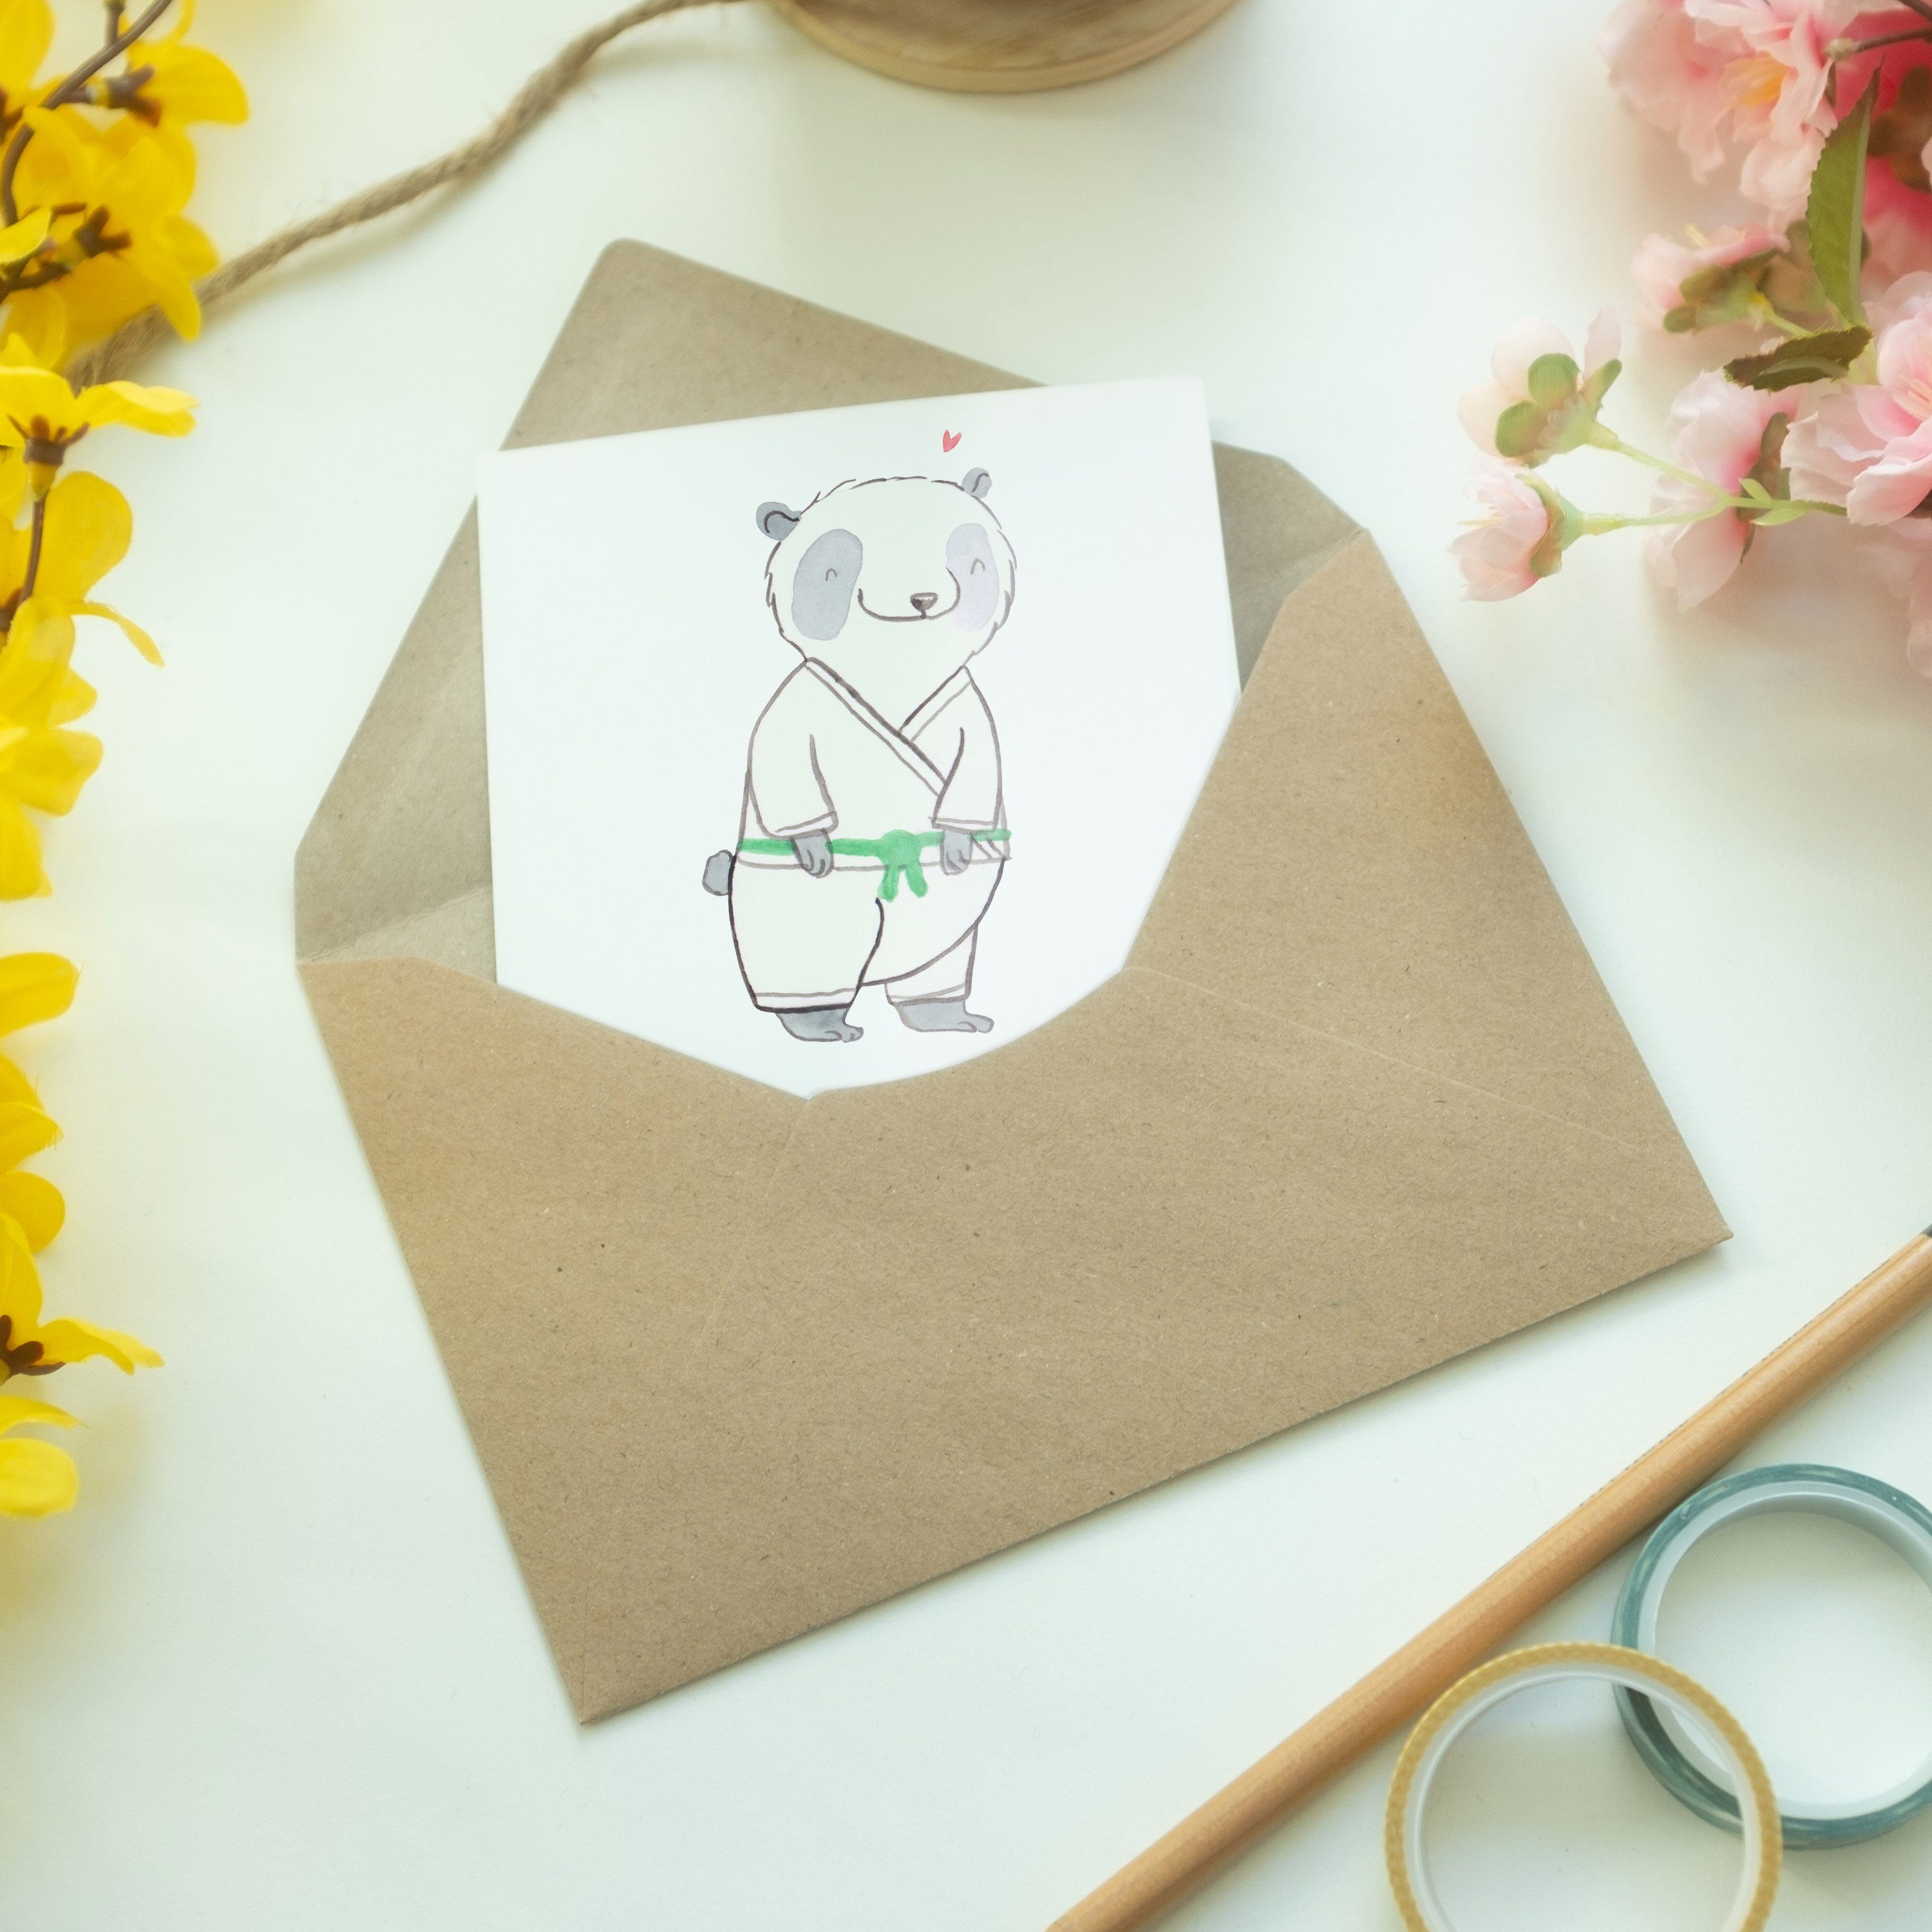 Panda Glückwunschkarte Panda Jitsu - Grußkarte Klappkarte, Mr. - Weiß Jiu Tage Geschenk, Mrs. &